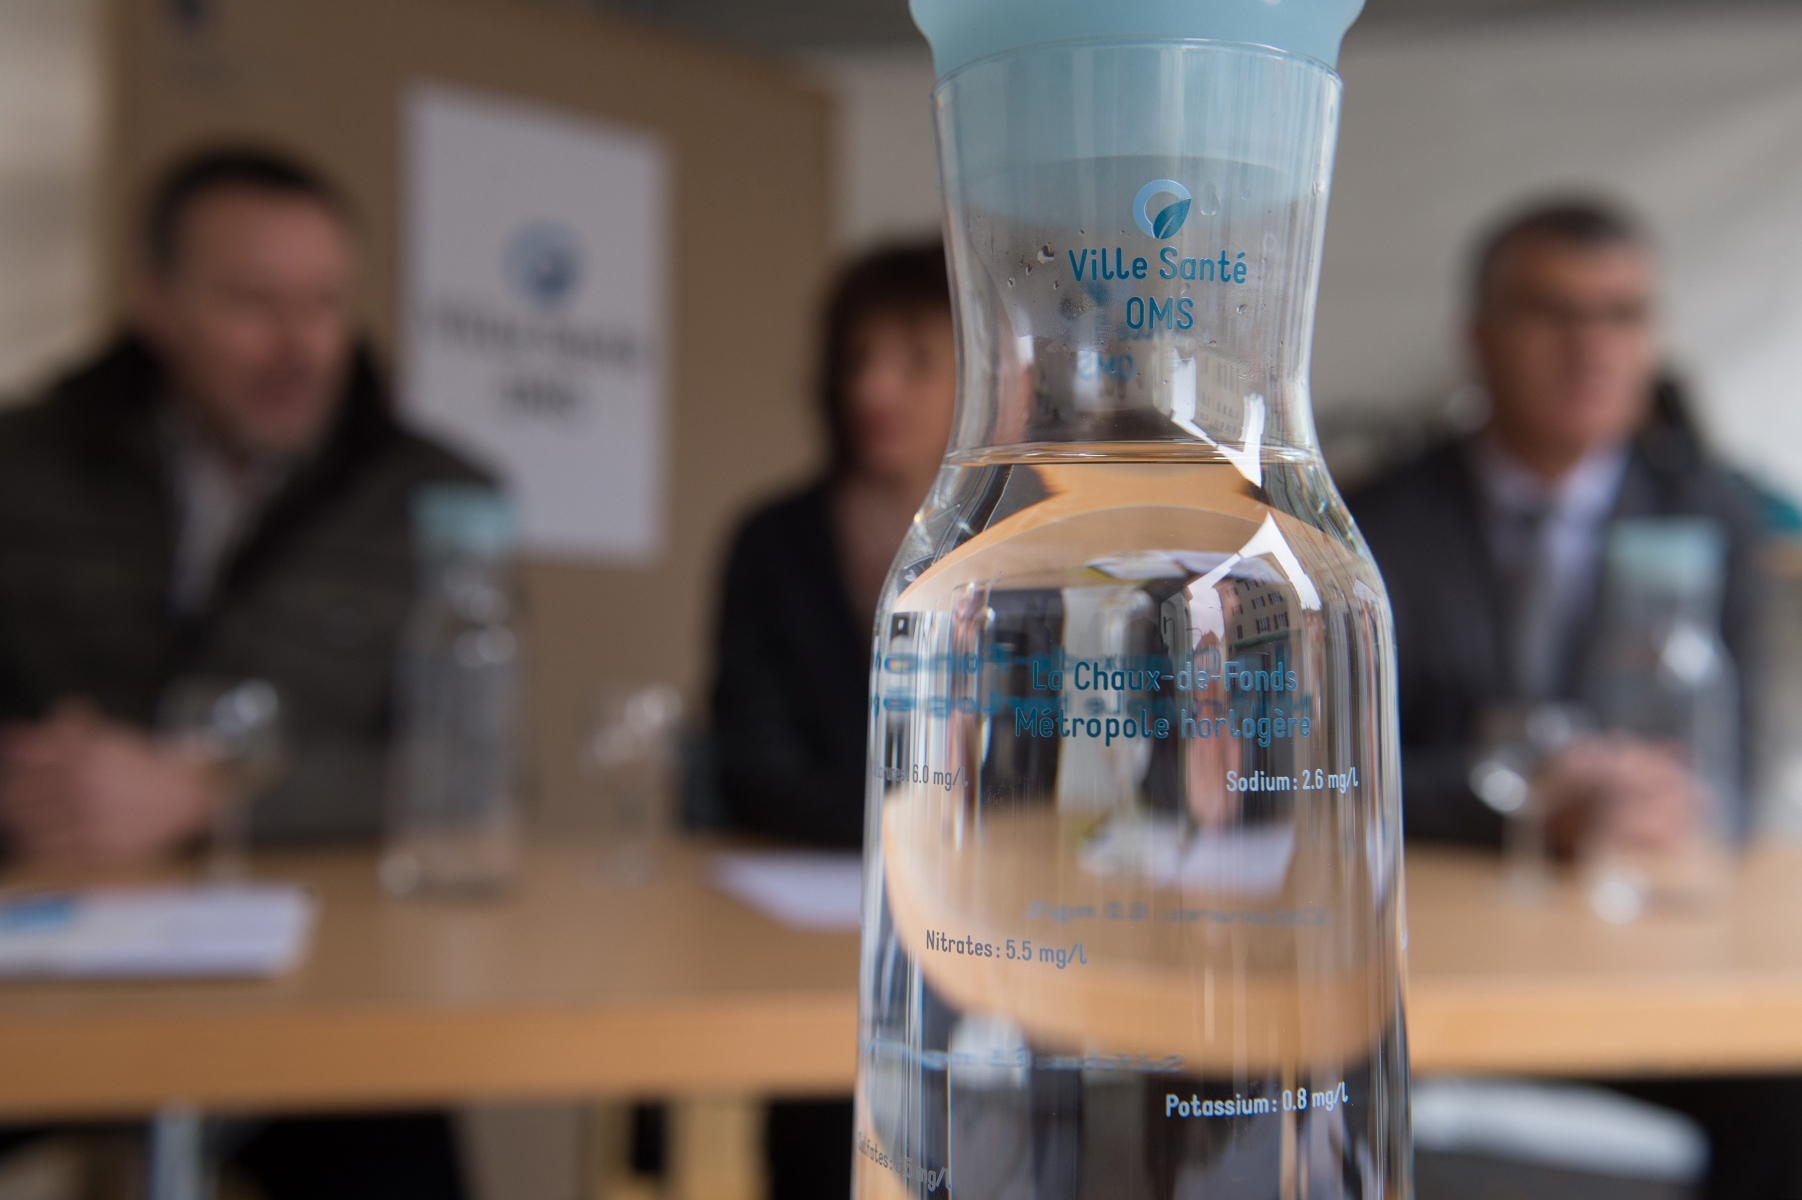 Label Ville Sante OMS
CP sur action poussant a boire de l eau

La Chaux-de-Fonds, 12 05 2014
? Photo David Marchon